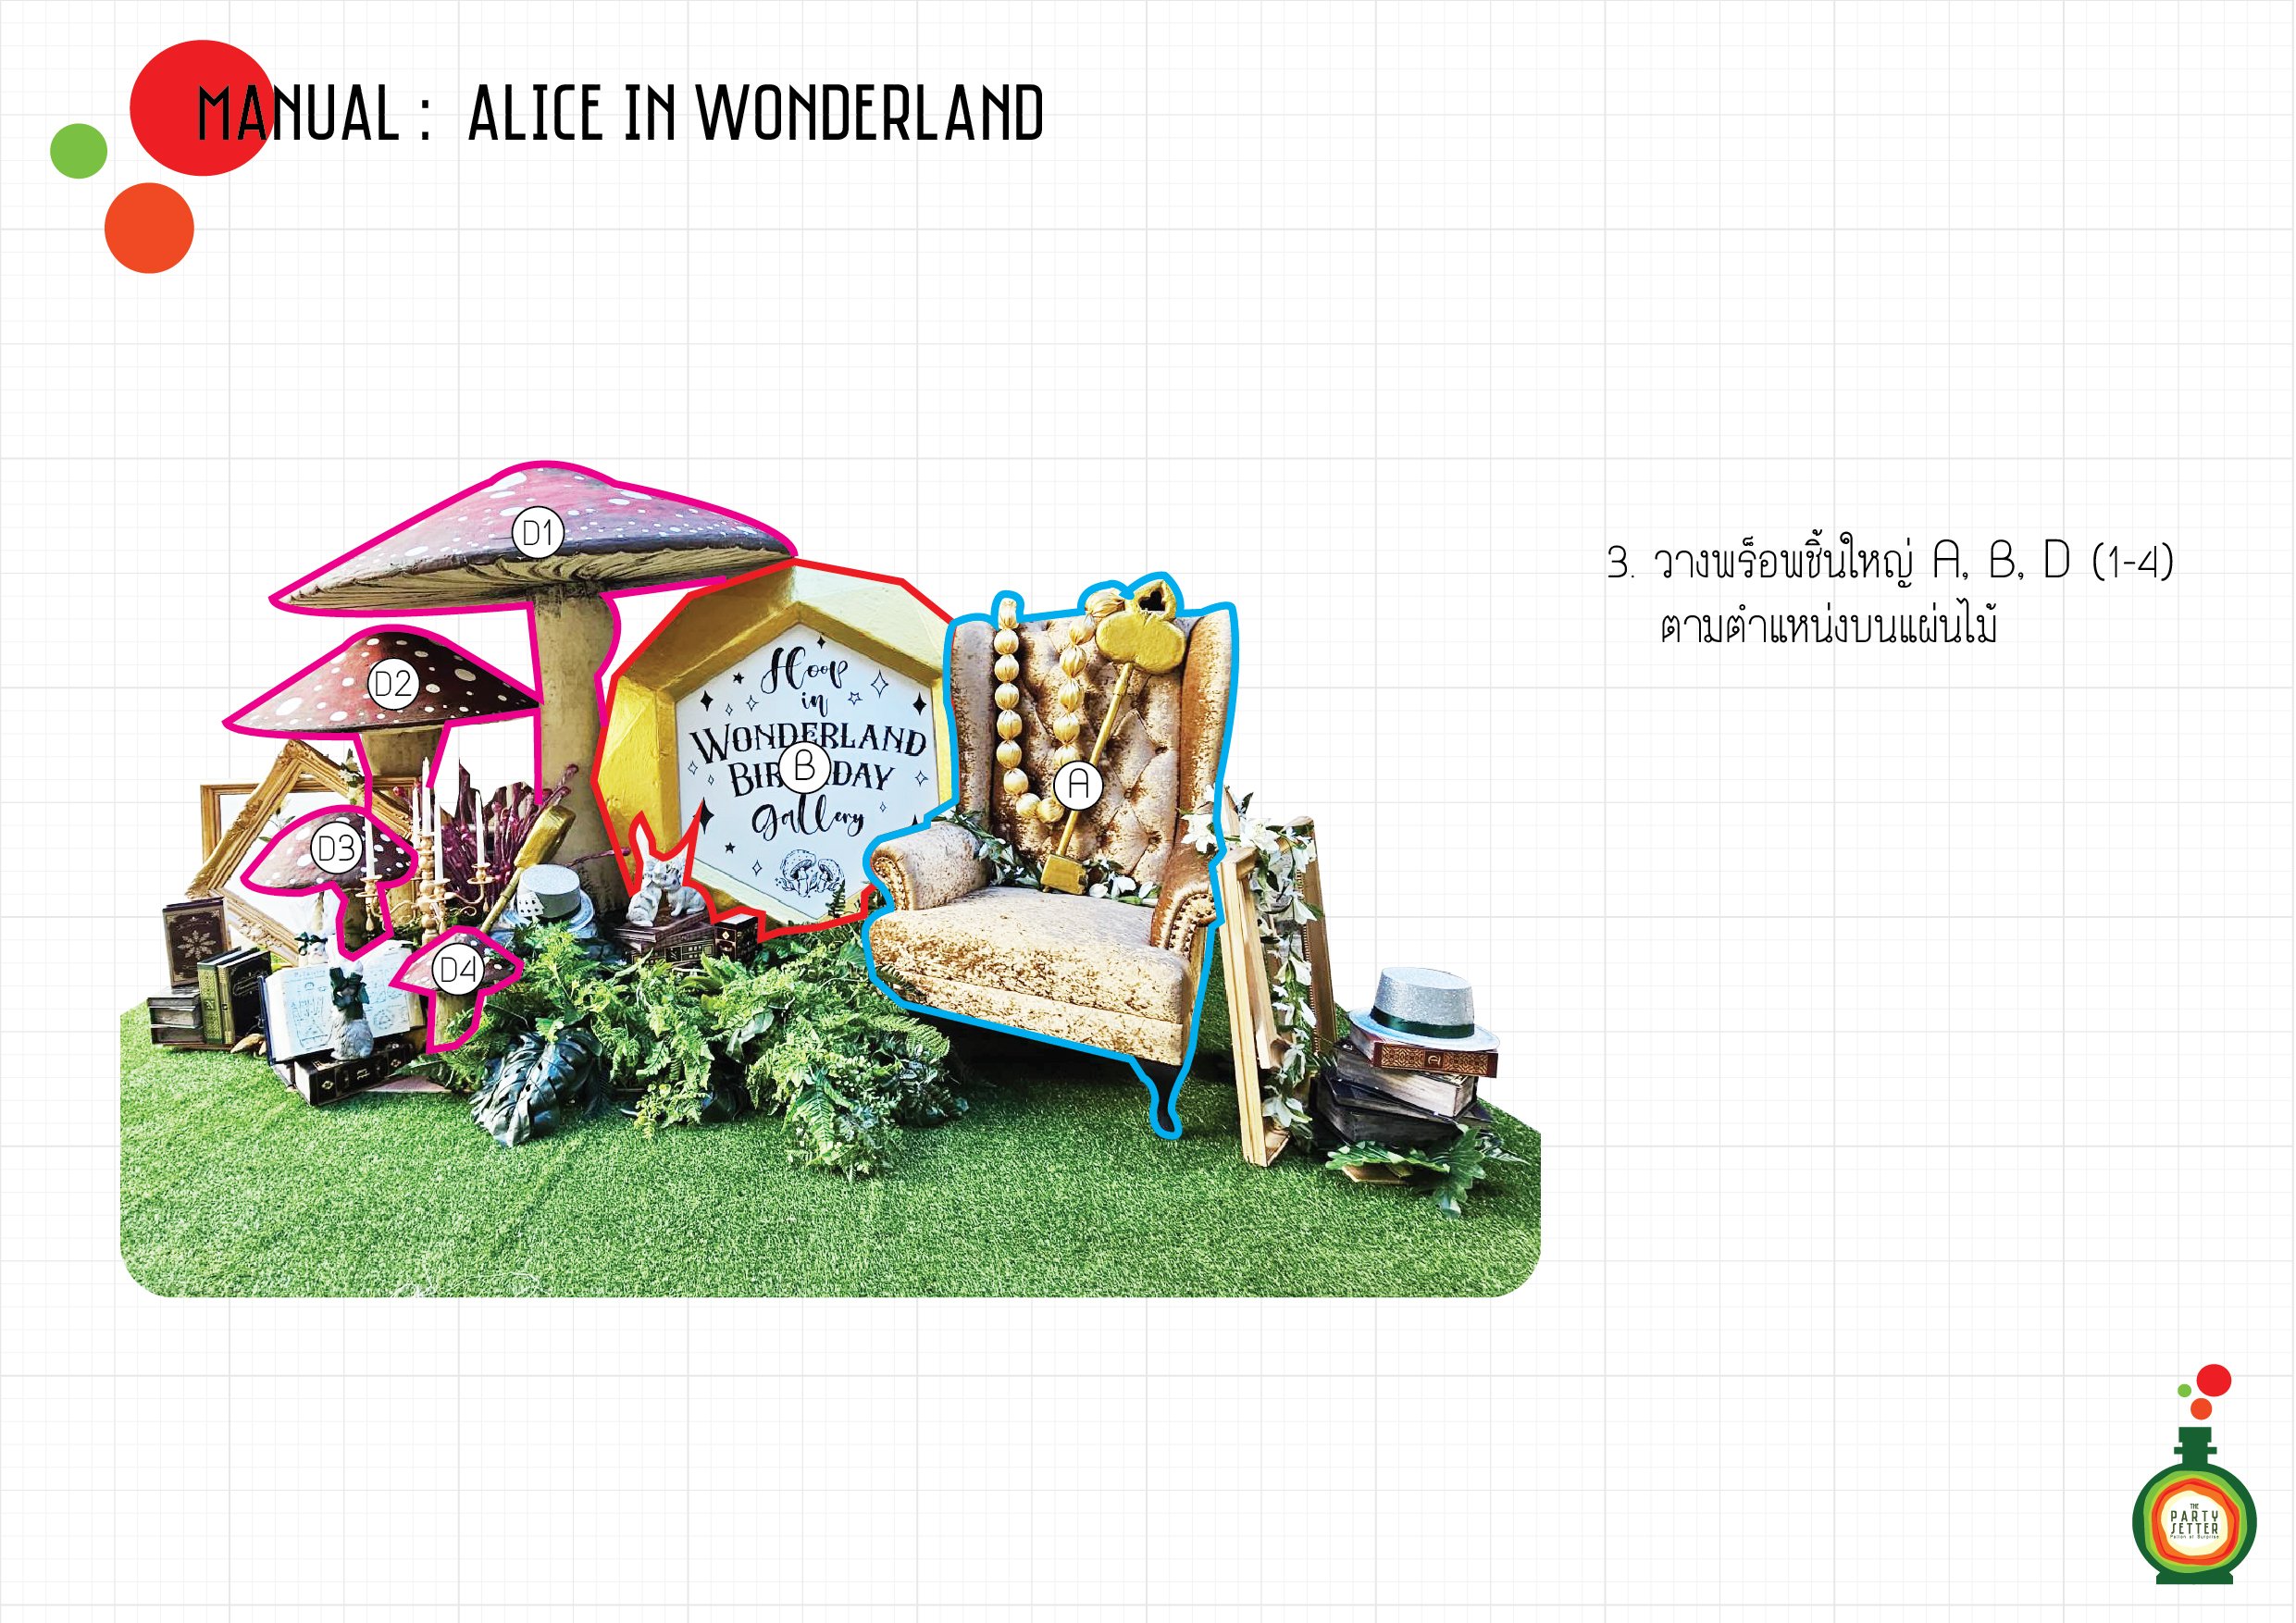 Manual_Alice in Wonderland_03-01.jpg